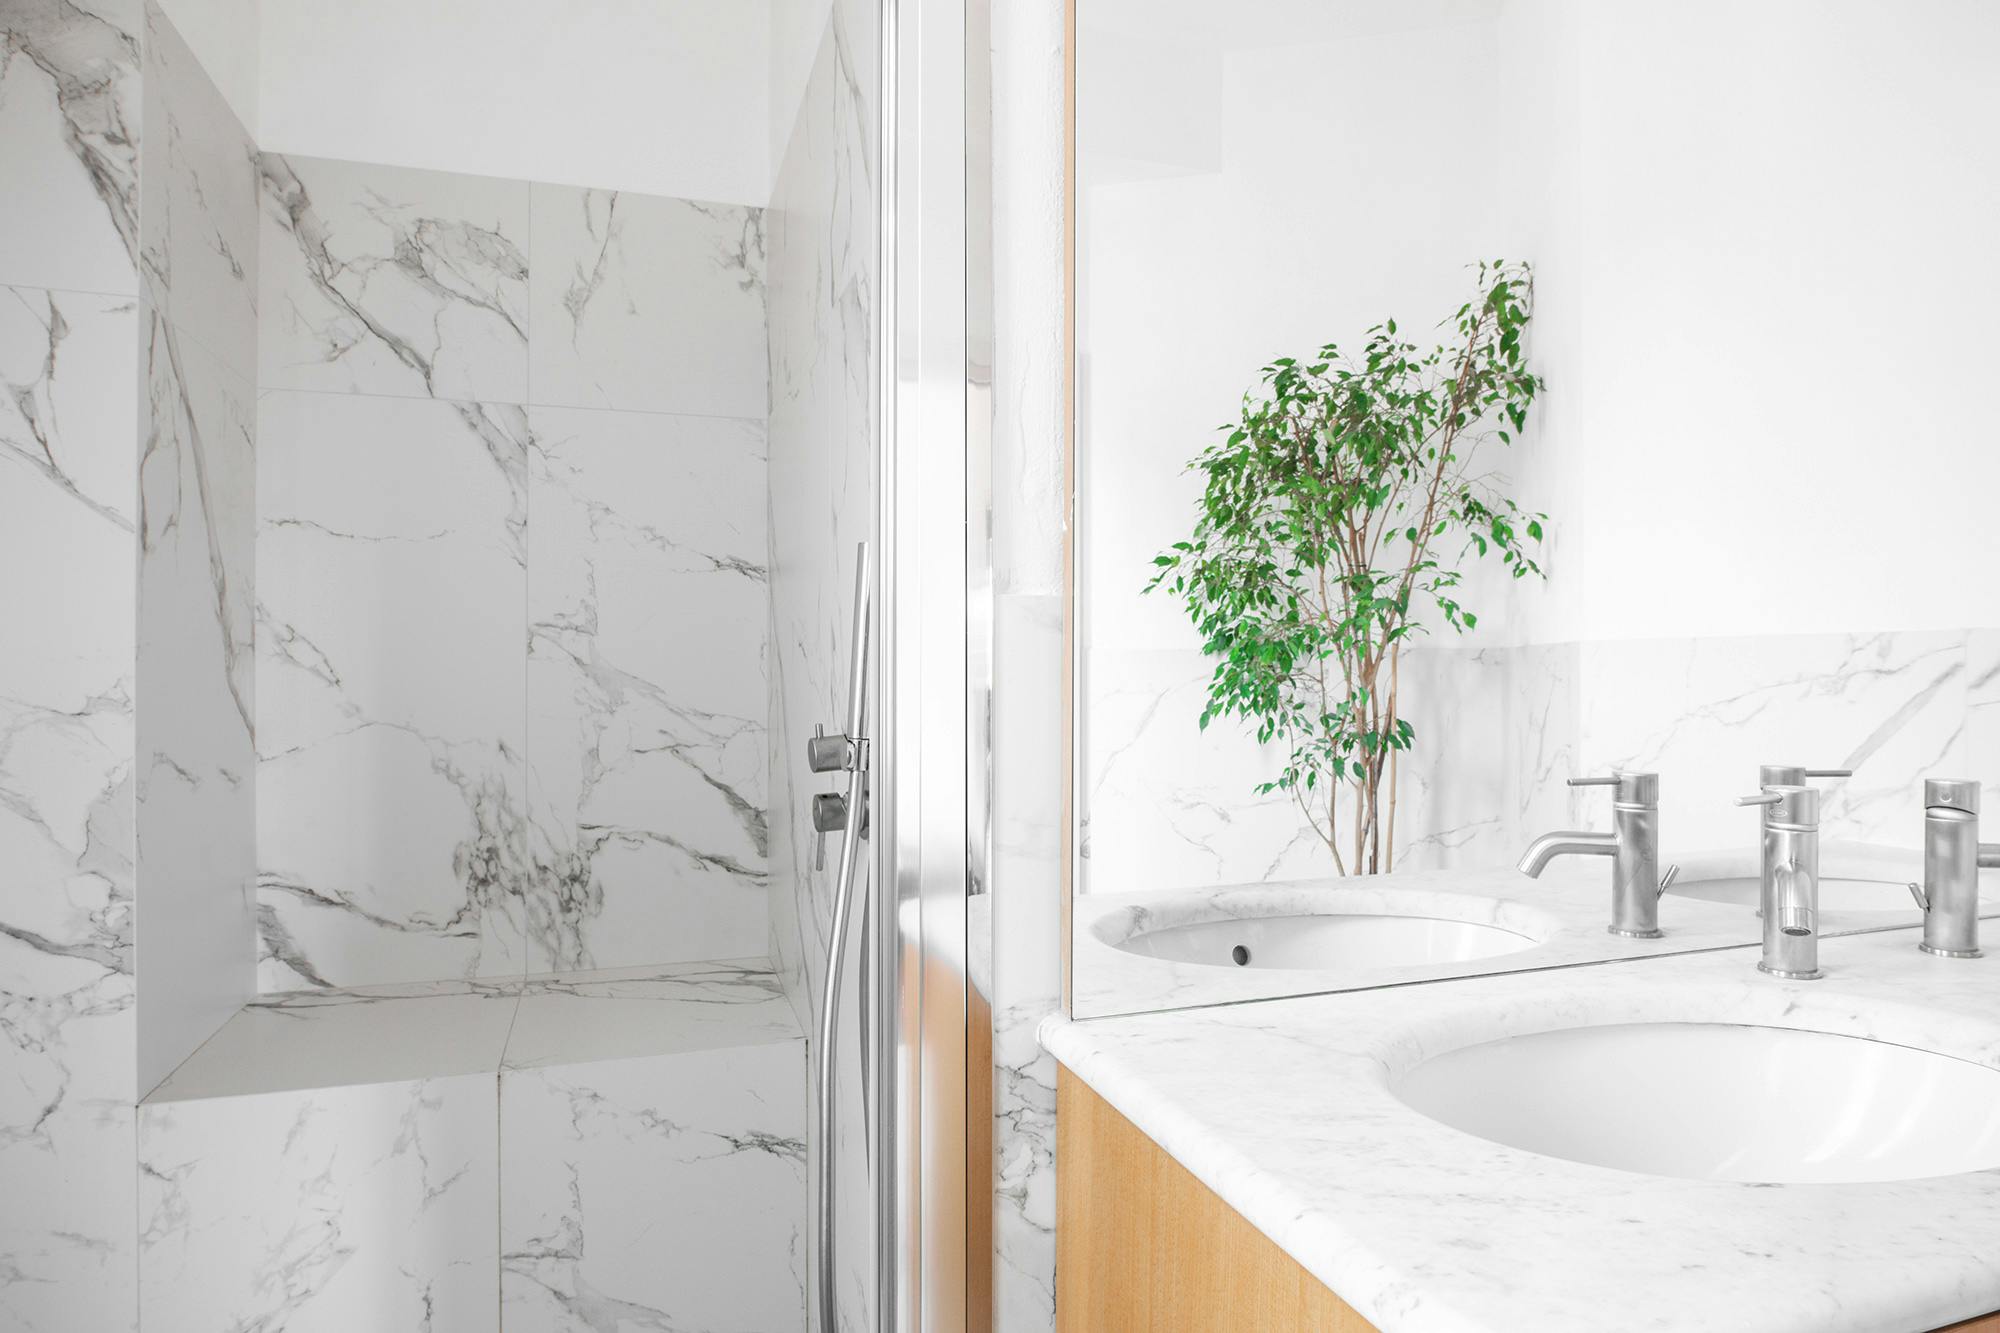 Imagen número 75 de Un baño privado en Milán amplio, resistente y elegante gracias a Dekton 